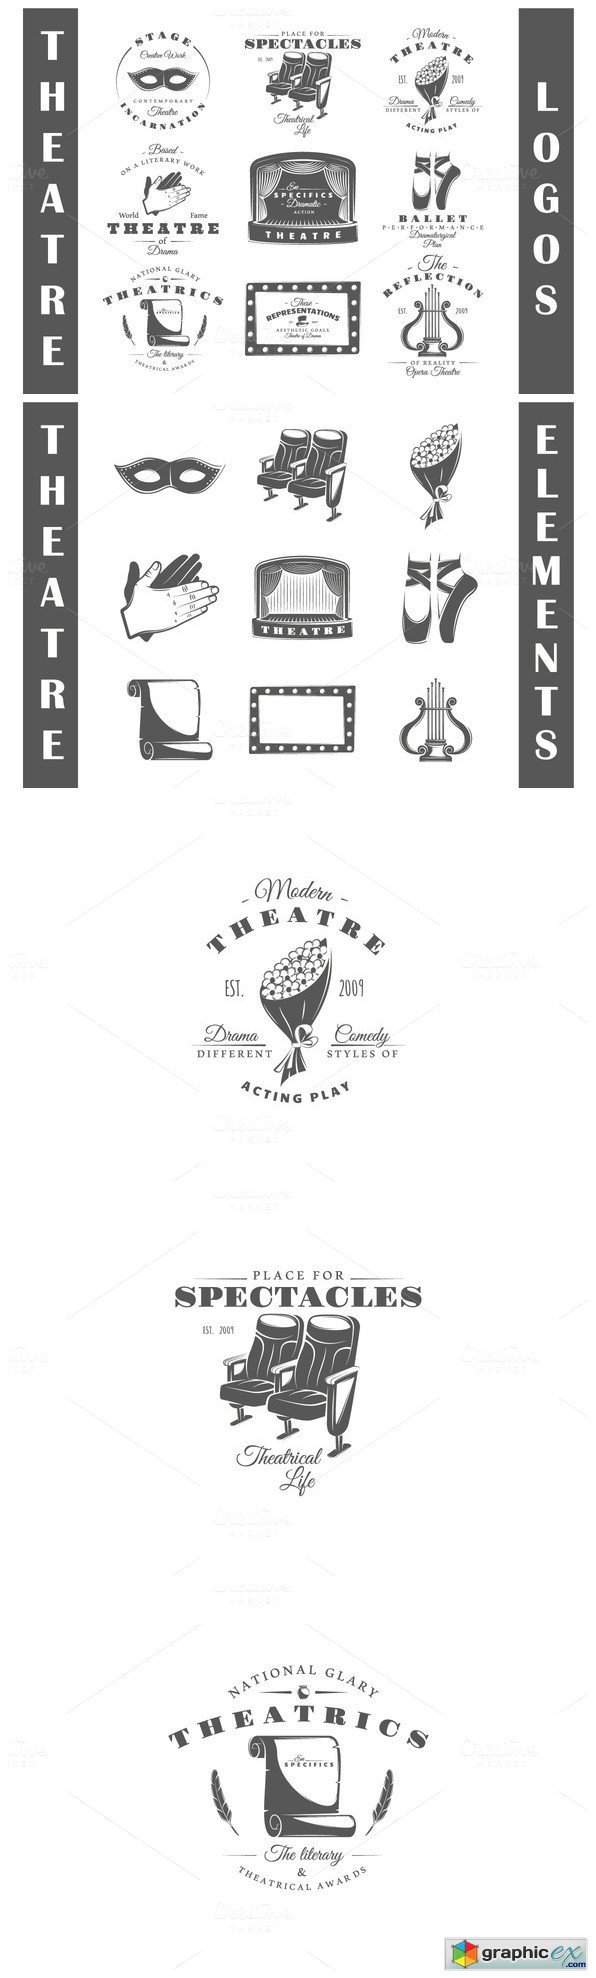 9 Theatre logos templates Vol2